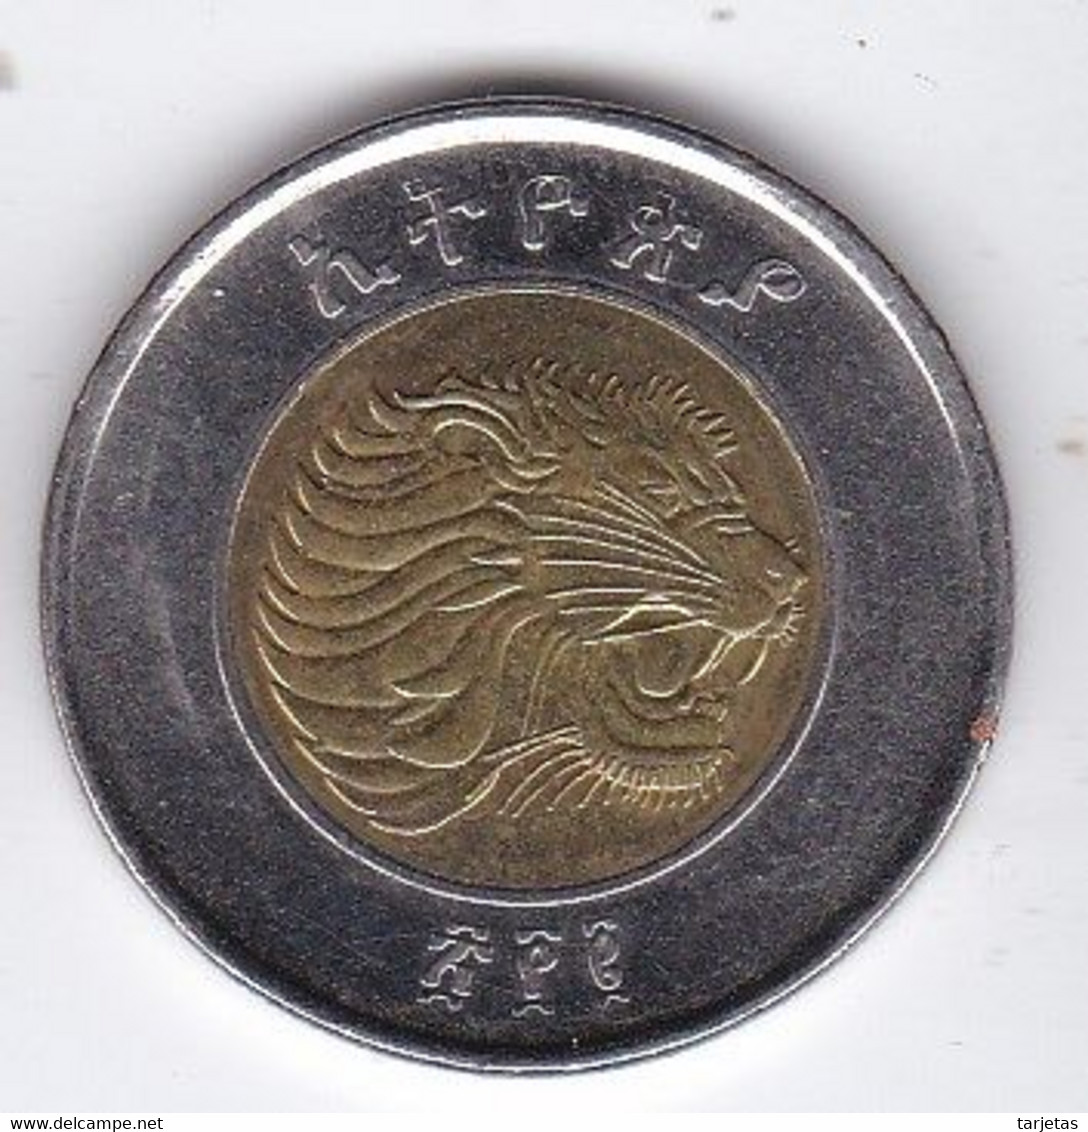 MONEDA DE ETIOPIA DE 1BIRR DEL AÑO 2002  (COIN) - Ethiopie